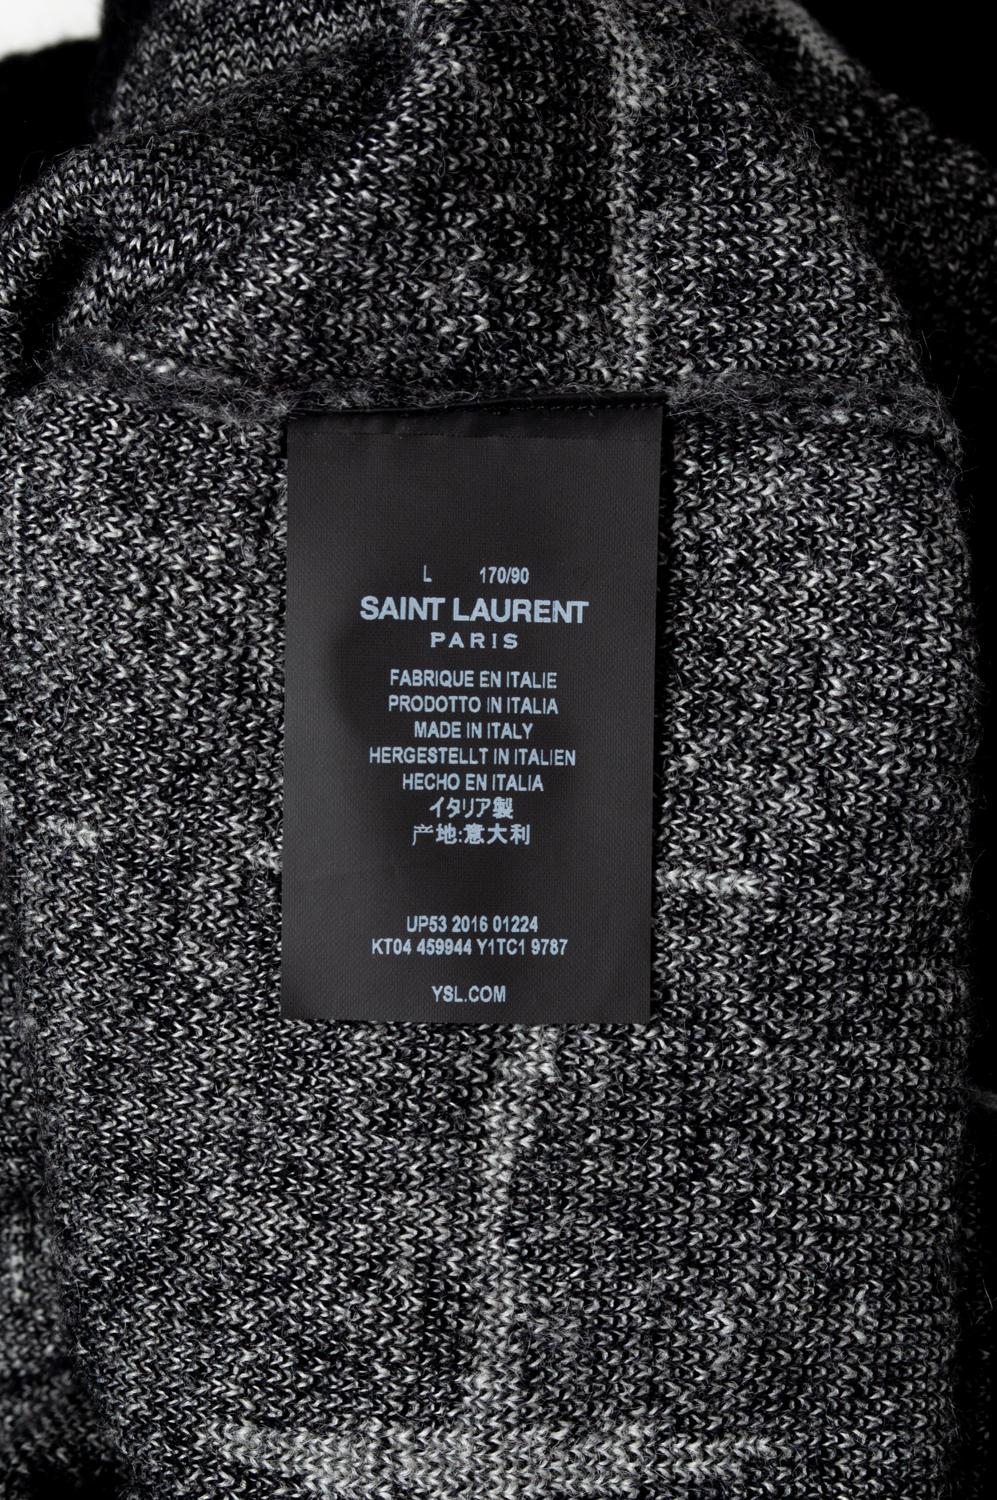  Saint Laurent Paris Men Sweater Size Large, S588 For Sale 2